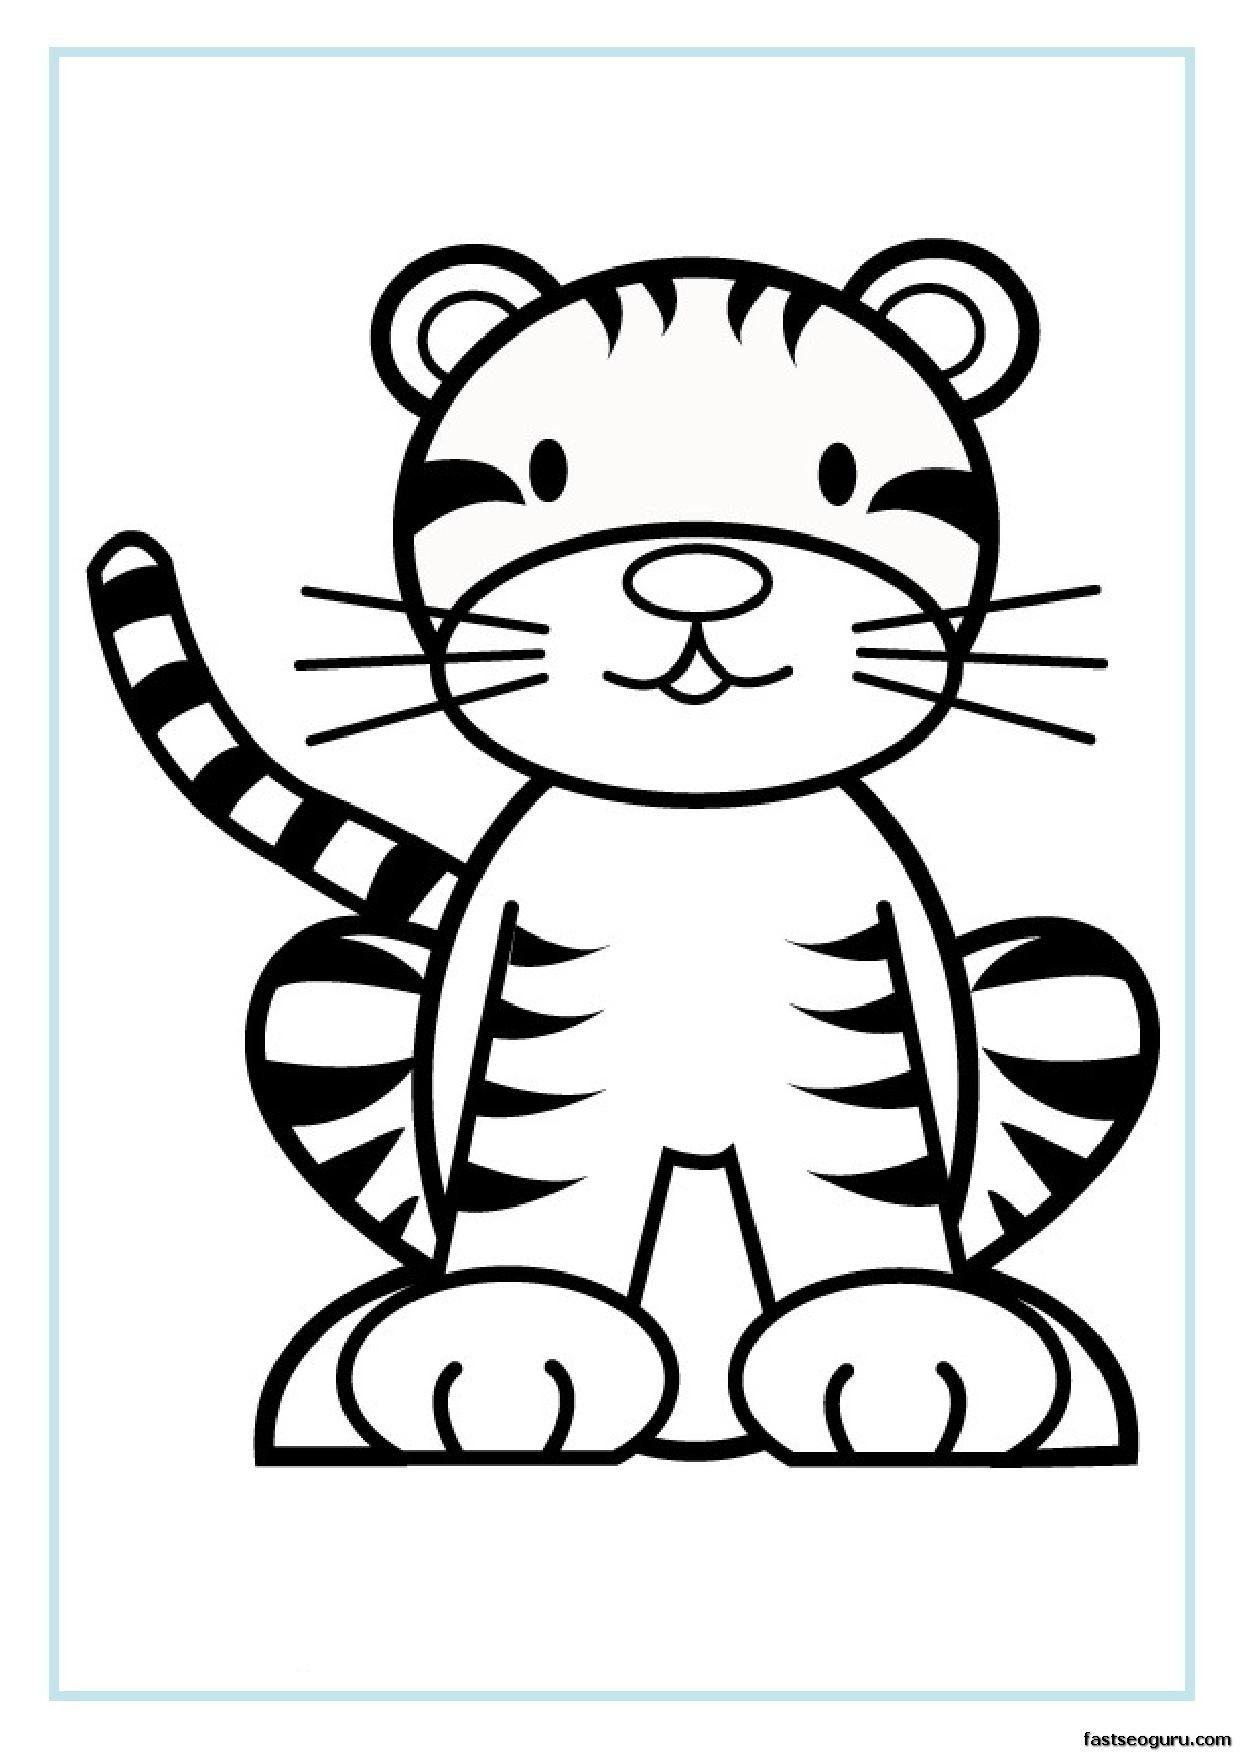 Tranh tô màu con hổ phong cách hoạt hình